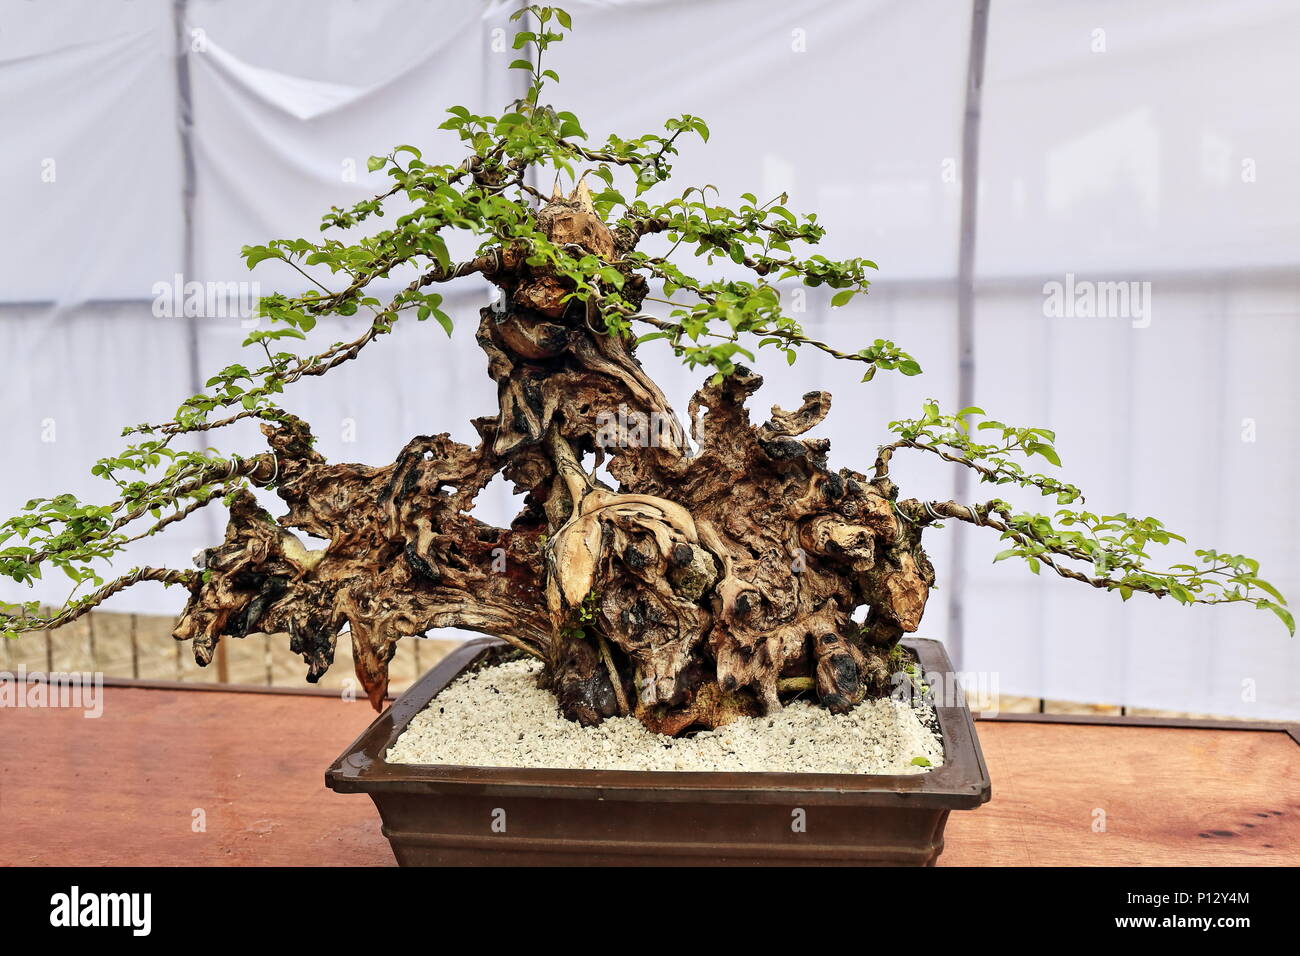 Bonsai Pflanzen oder 'Fach' - Japanische Kunst-container Anbau von kleinen  Bäumen die Form und der Umfang der in voller Größe zu imitieren. Tugas bato  oder einfache Blatt Stockfotografie - Alamy